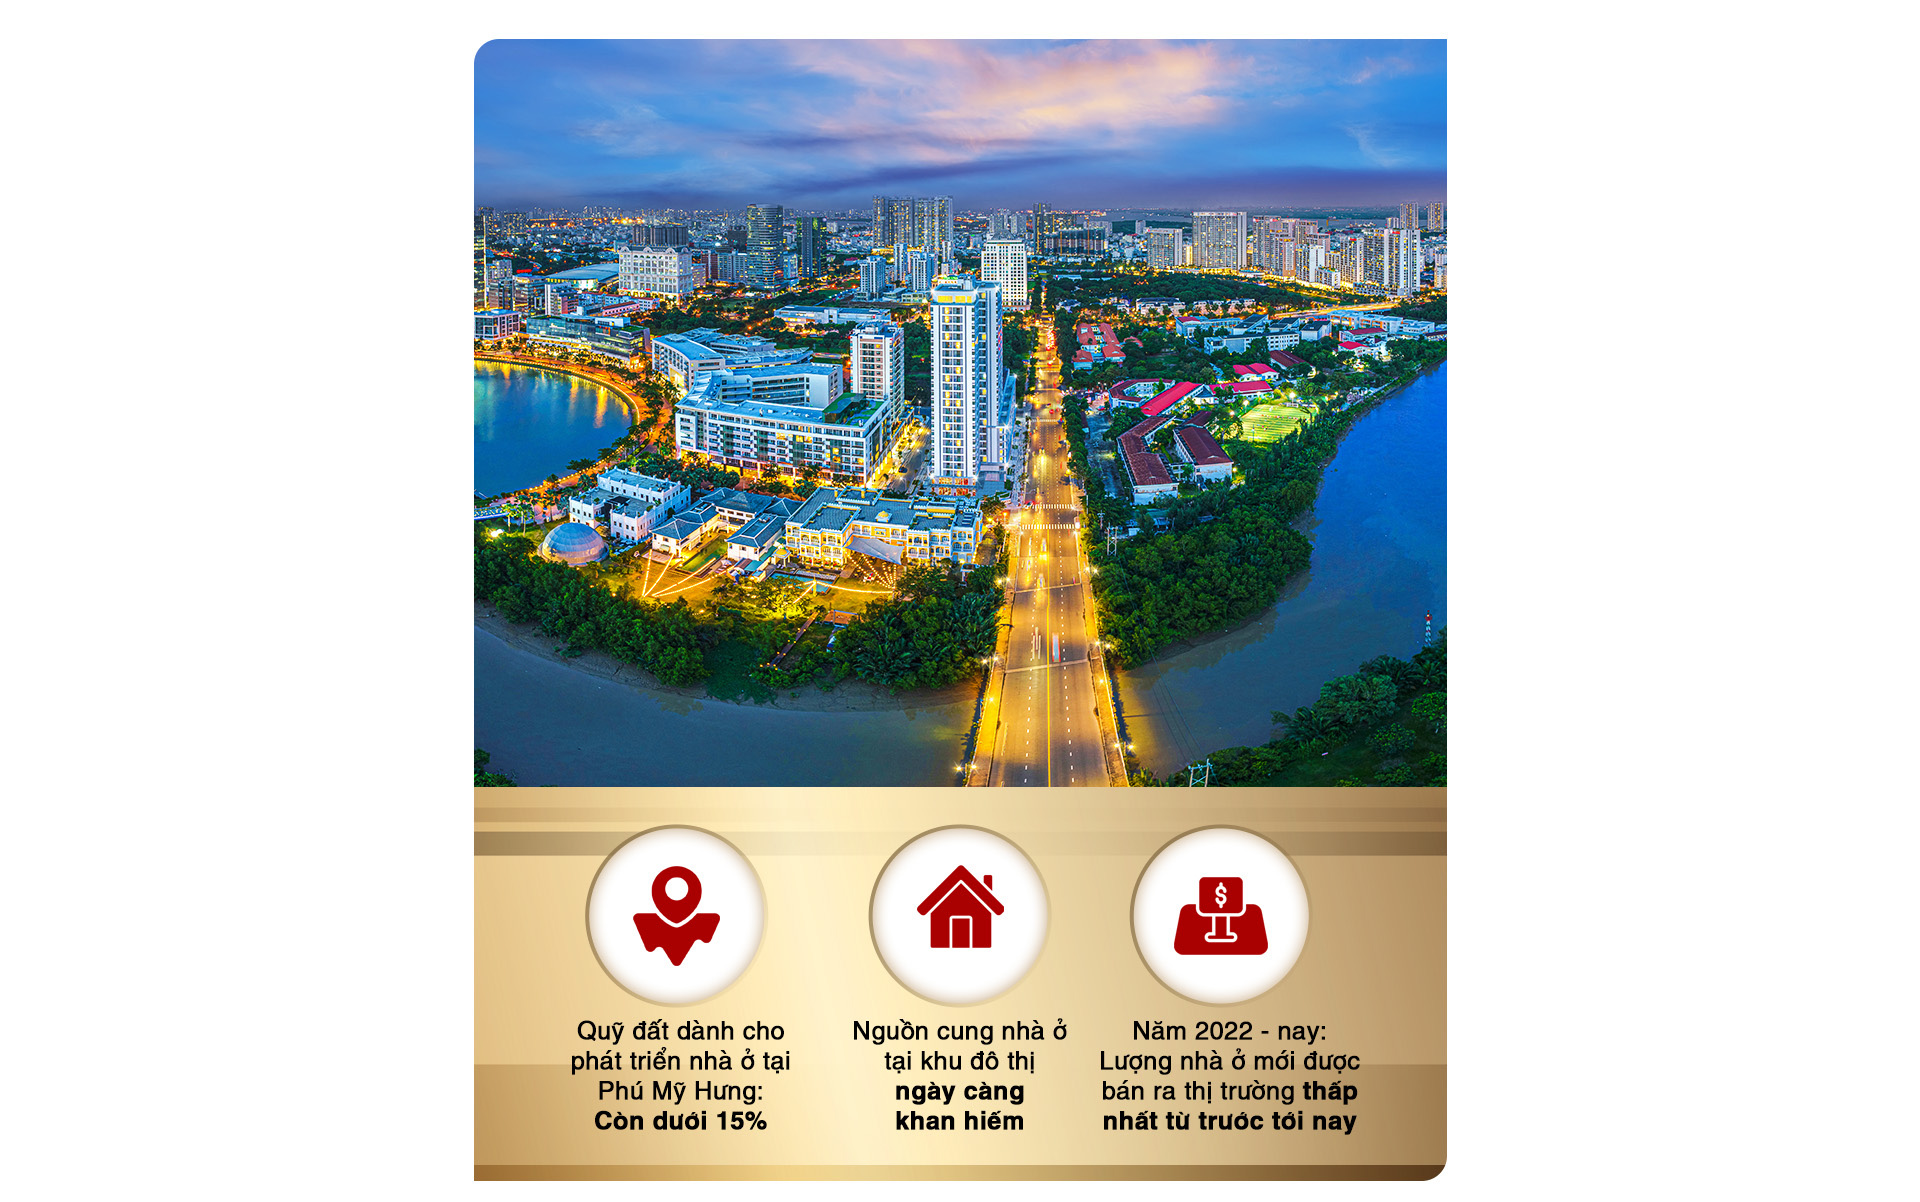 Bất động sản Phú Mỹ Hưng sắp đón sóng tăng trưởng từ loạt cú hích hạ tầng dịch vụ đô thị - Ảnh 5.